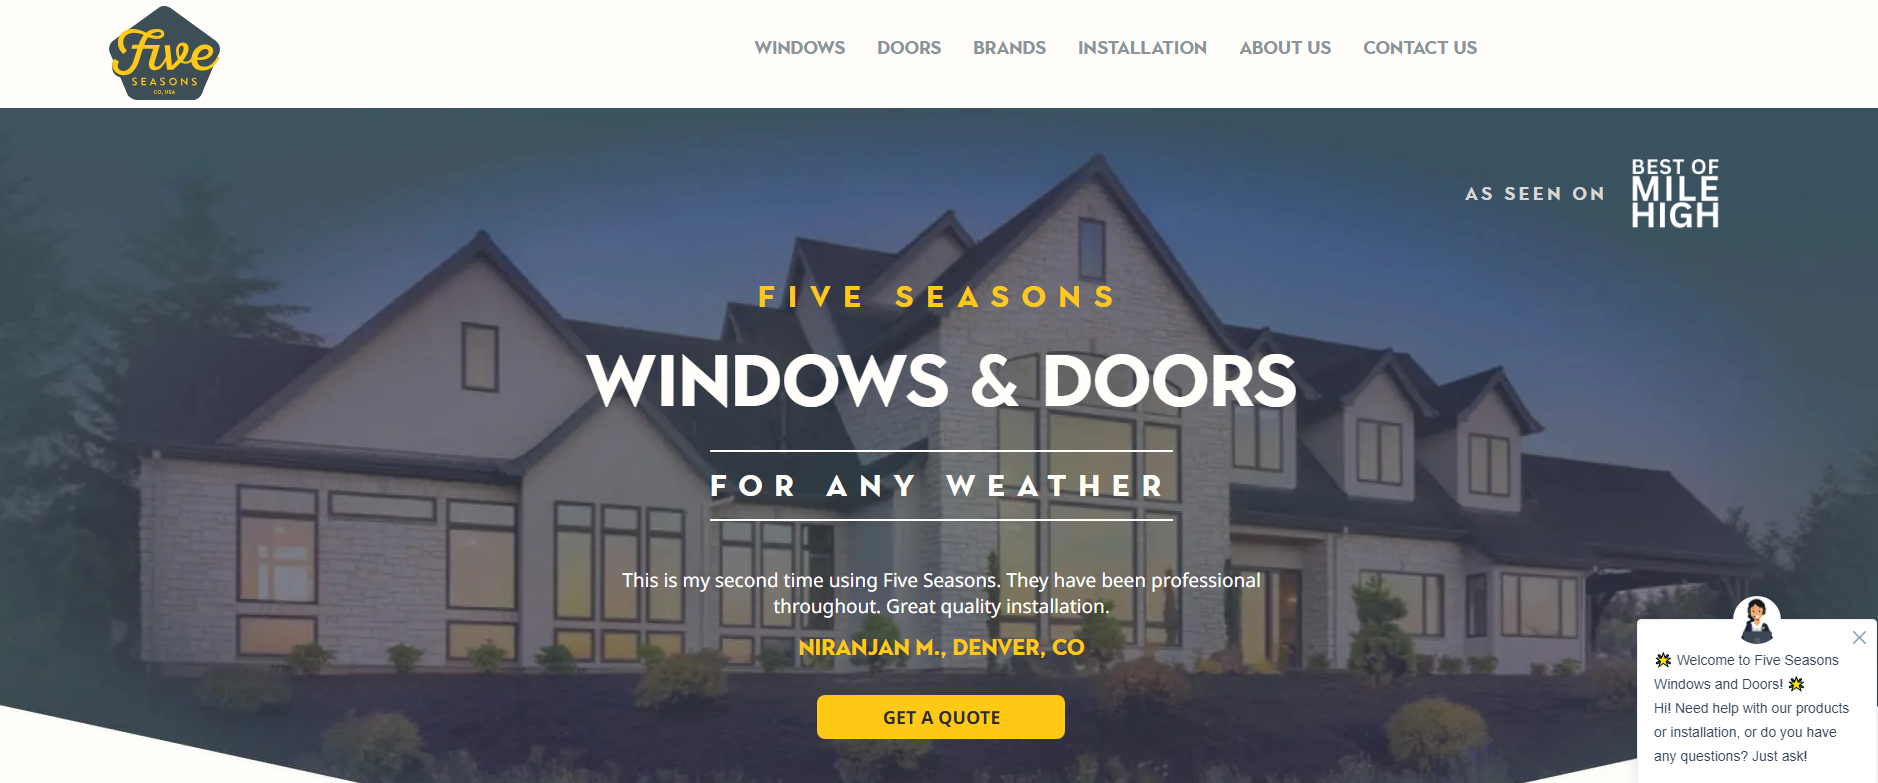 Five Seasons Windows & Doors banner